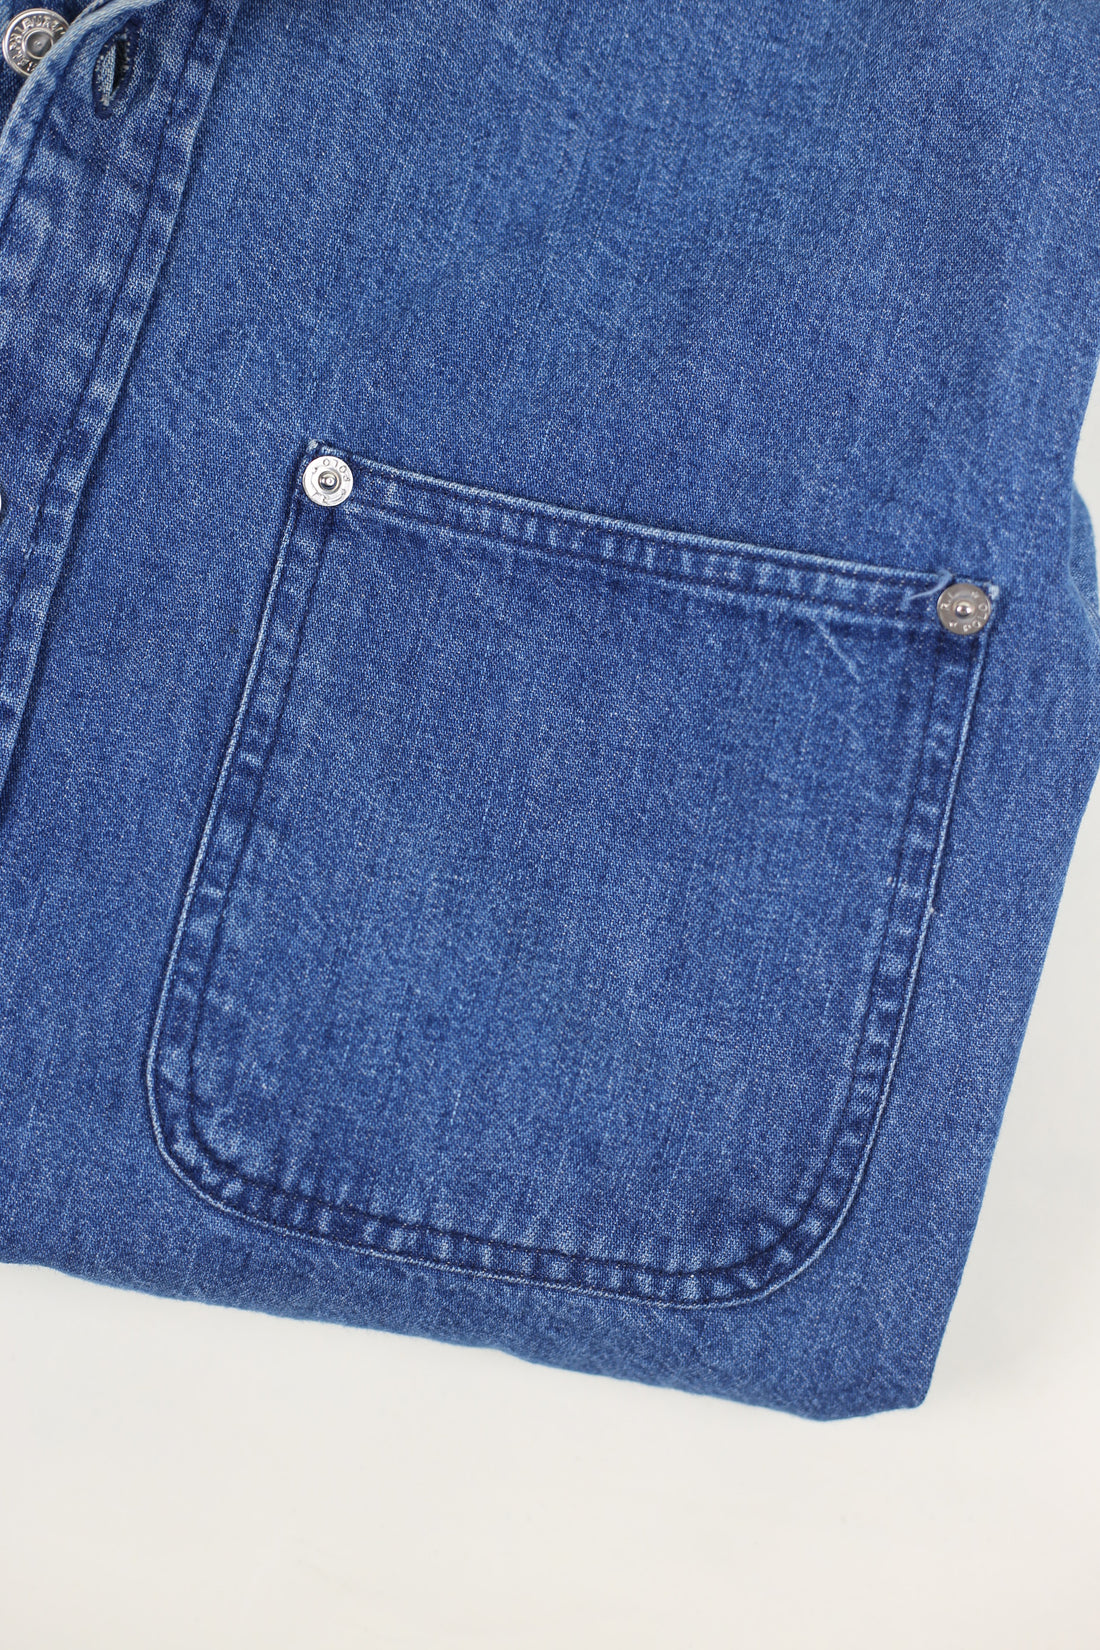 Camicia di jeans  vintage RL  - M -